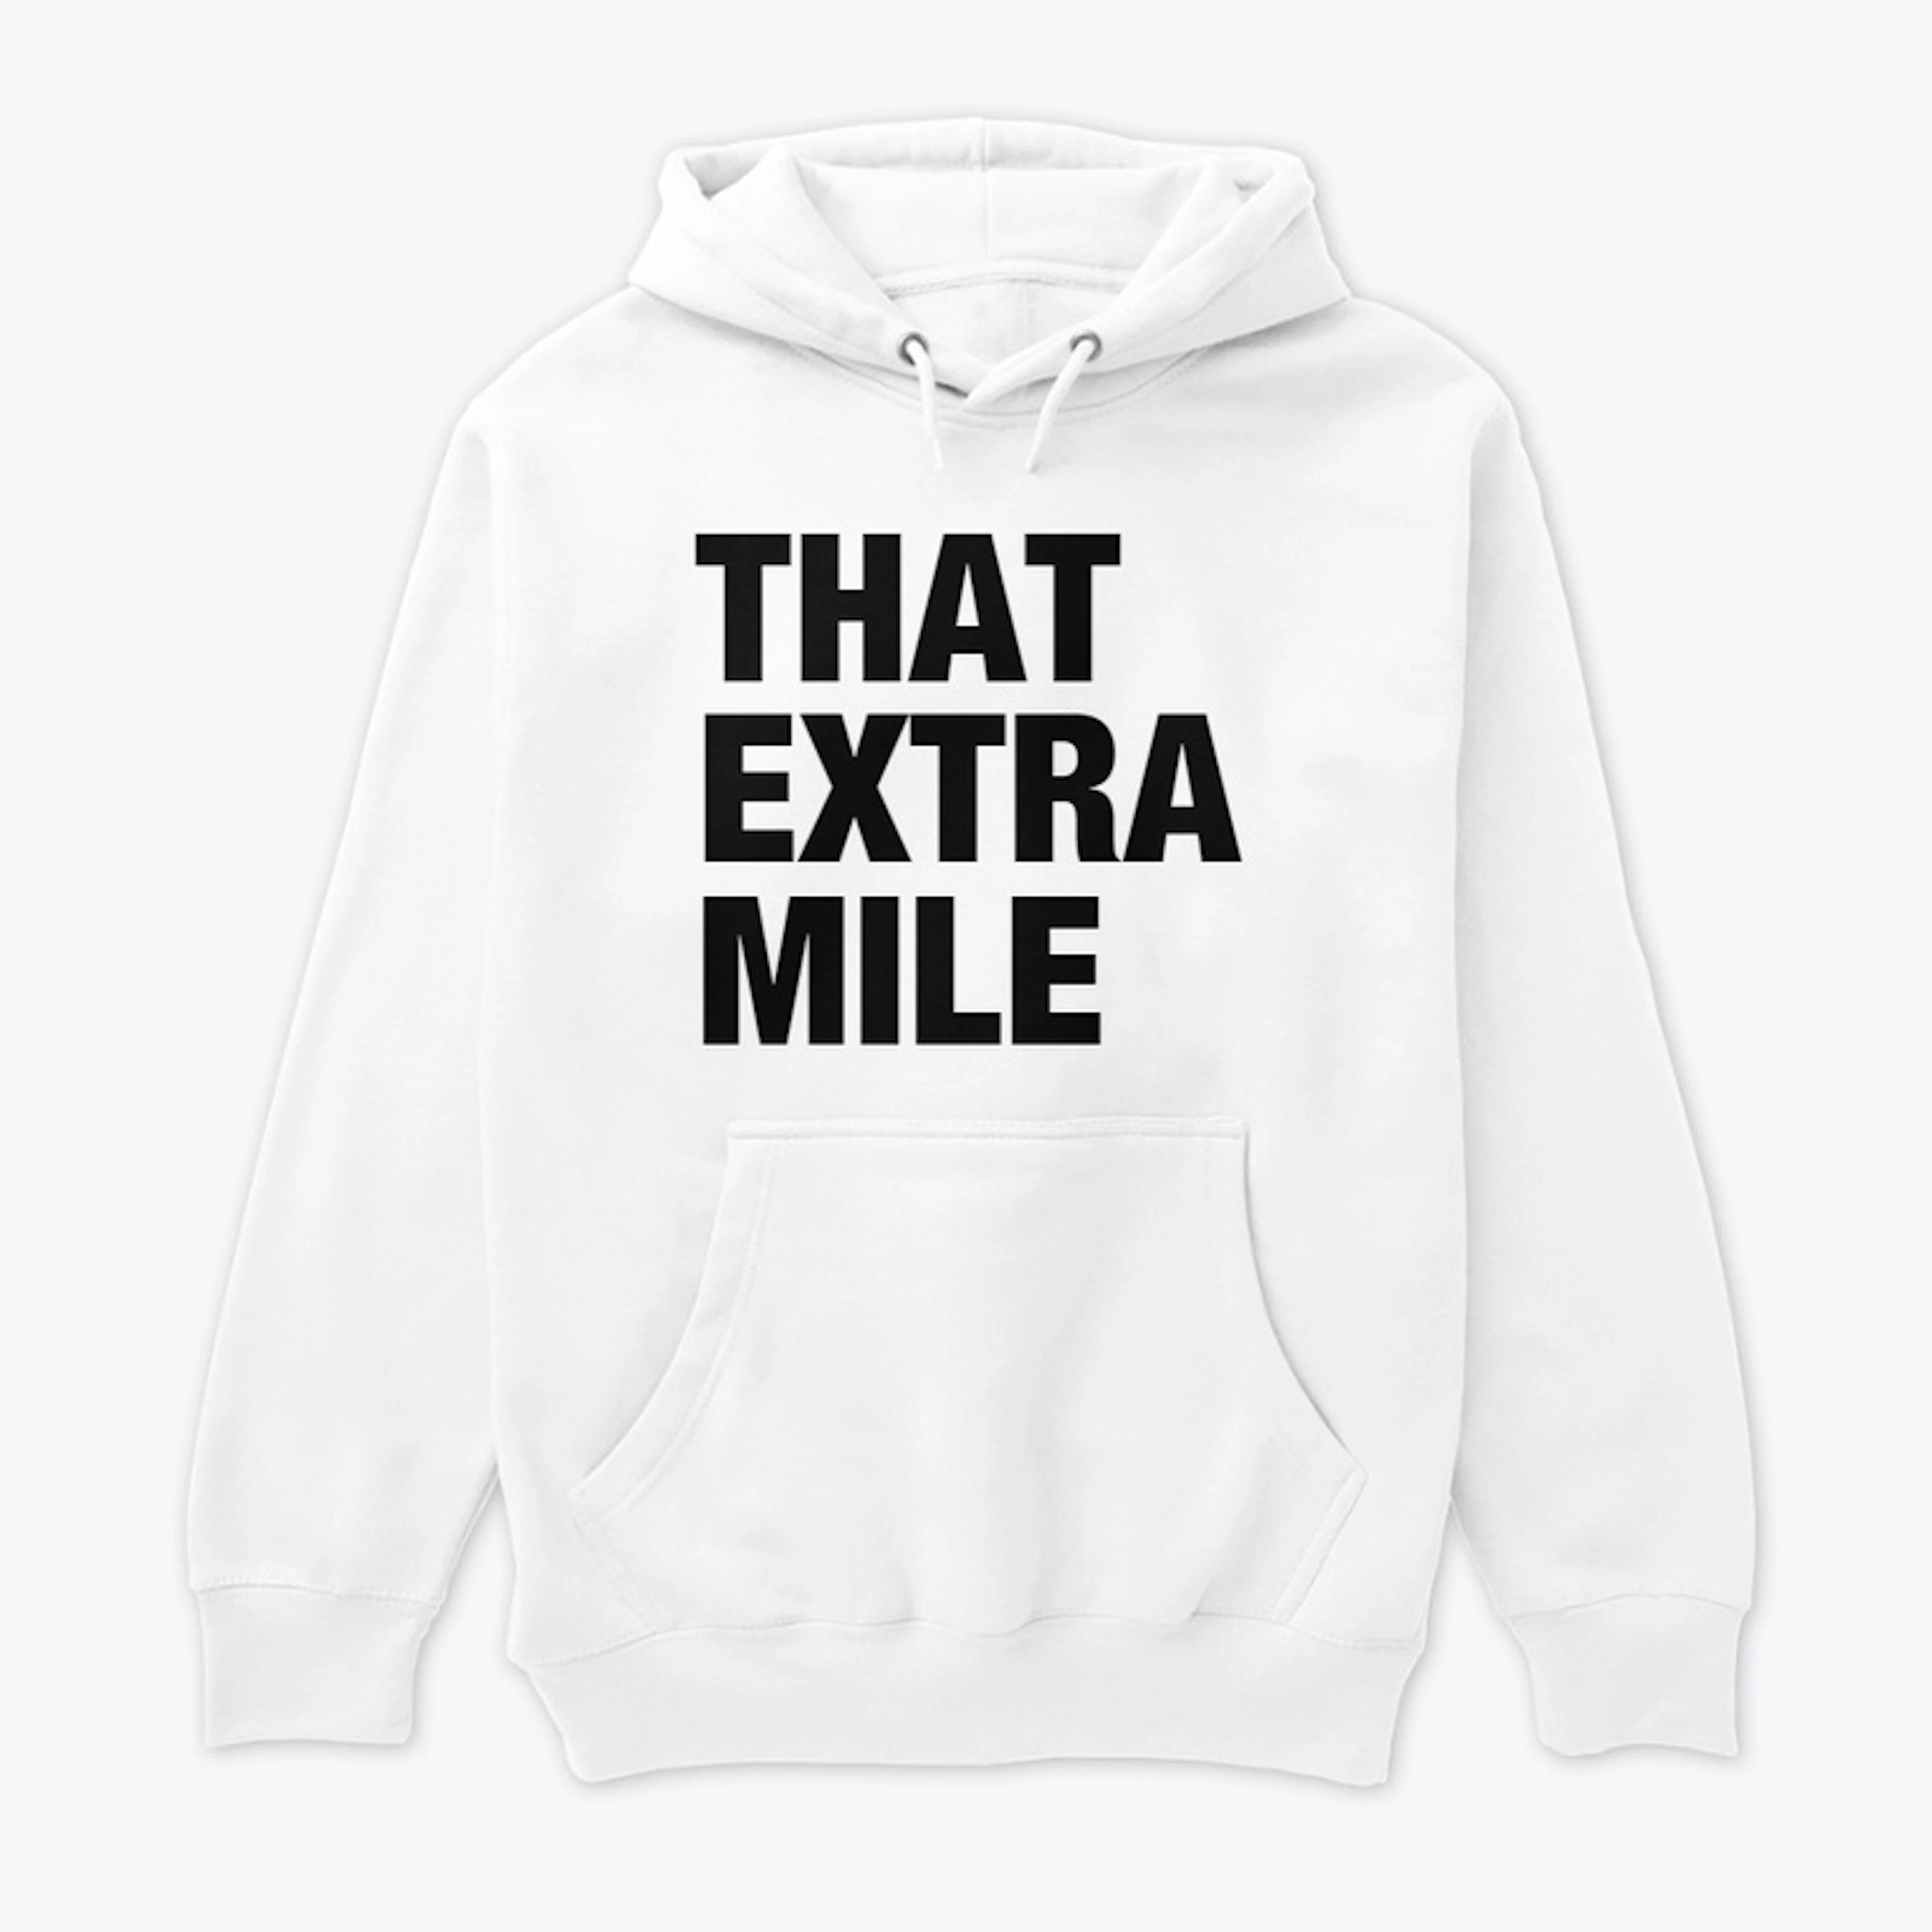 That Extra Mile - Premium Merch